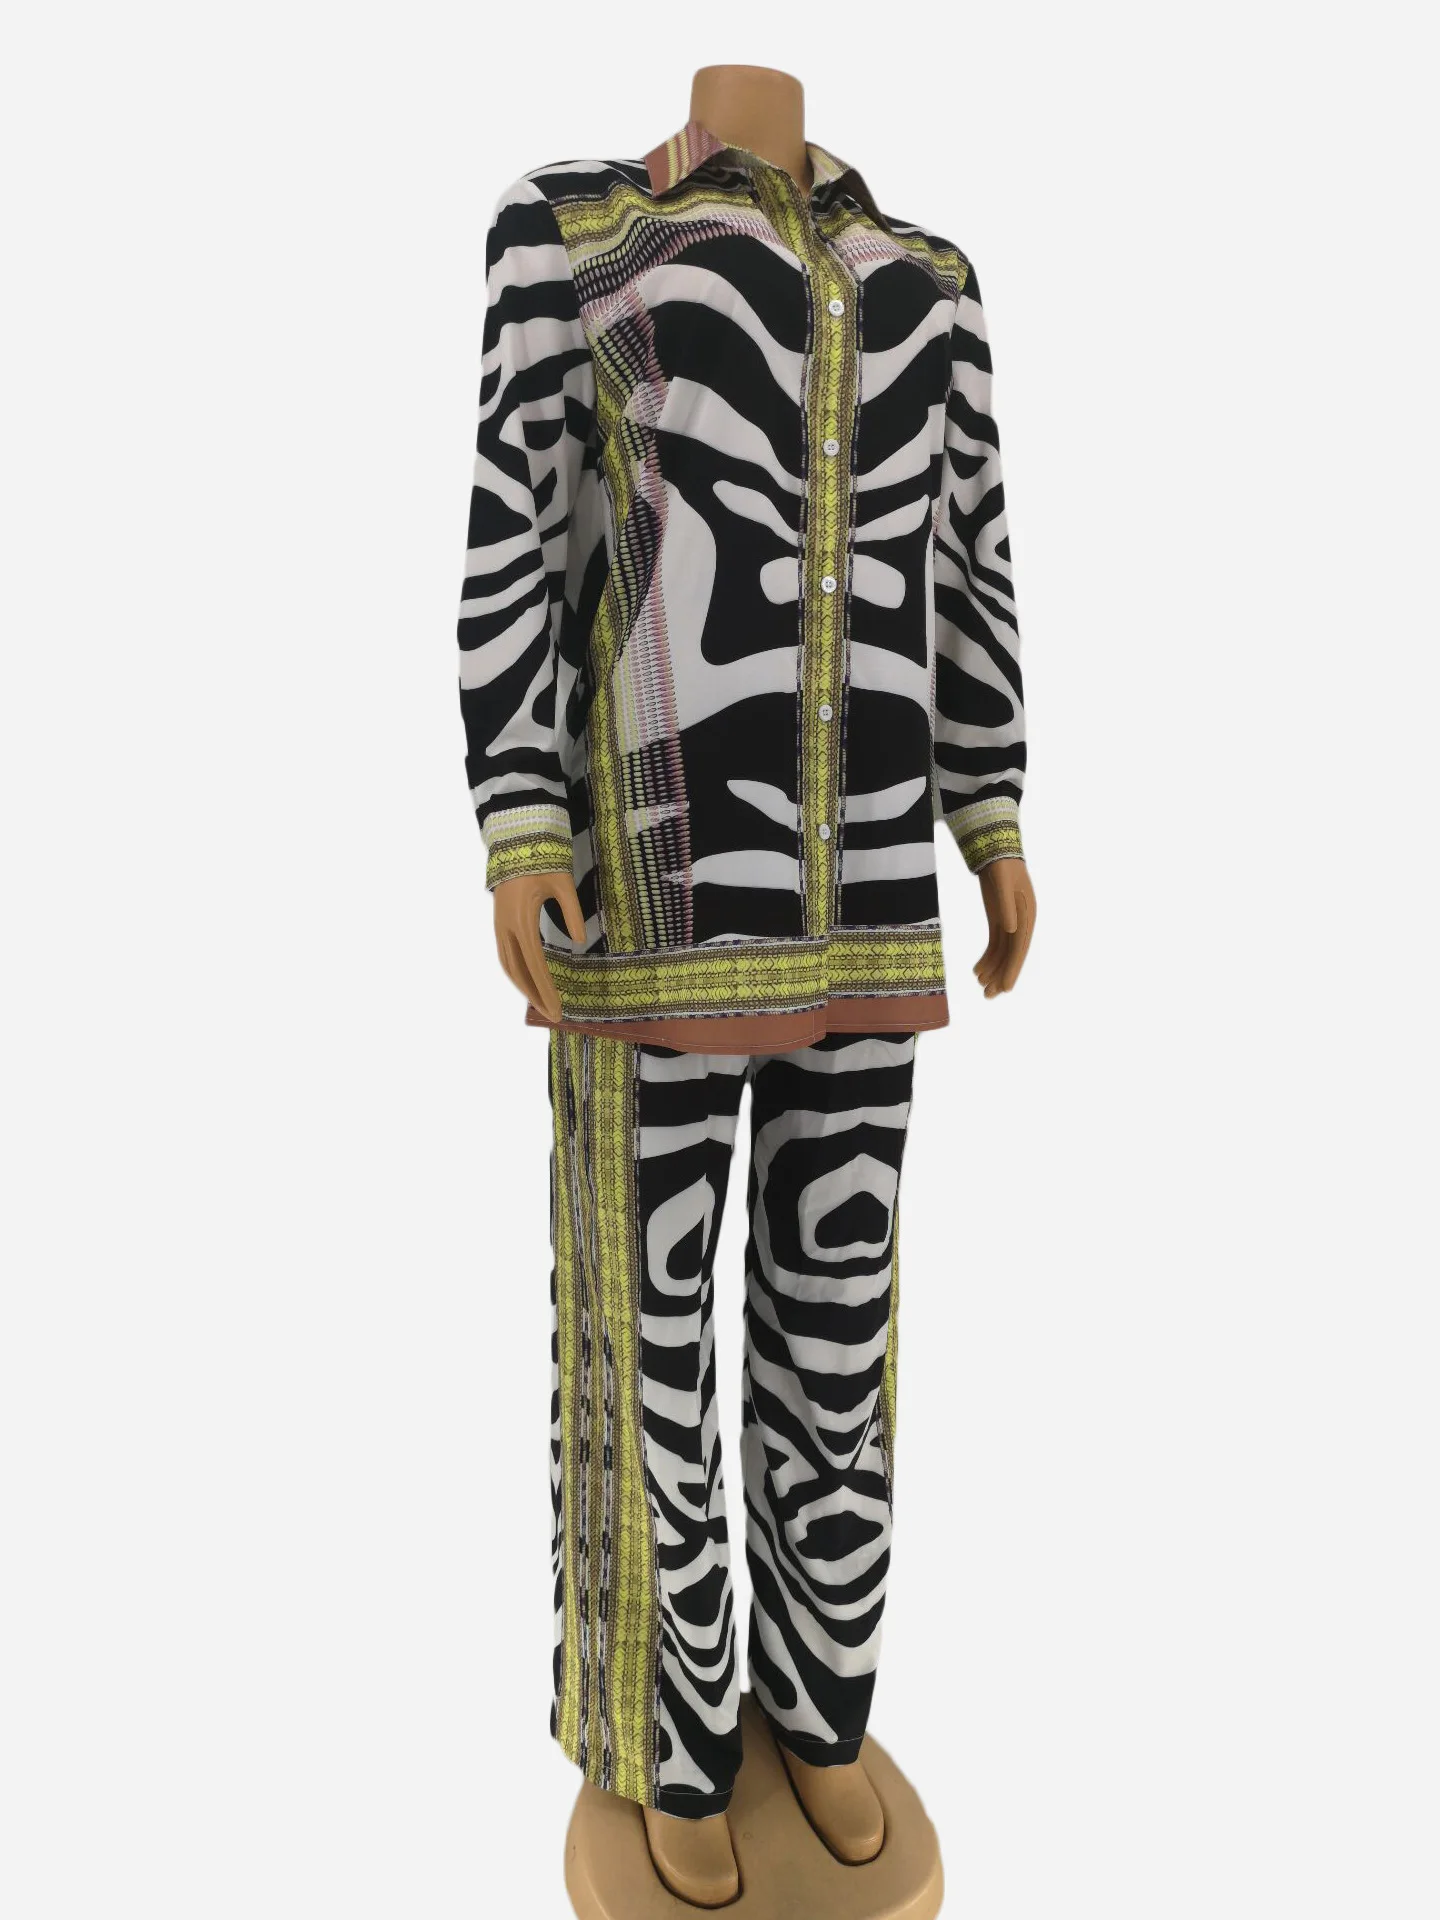 Африканская одежда костюм для женщин наборы Африканский принт эластичный Базен мешковатые брюки рок стиль Дашики рукав известный костюм для леди